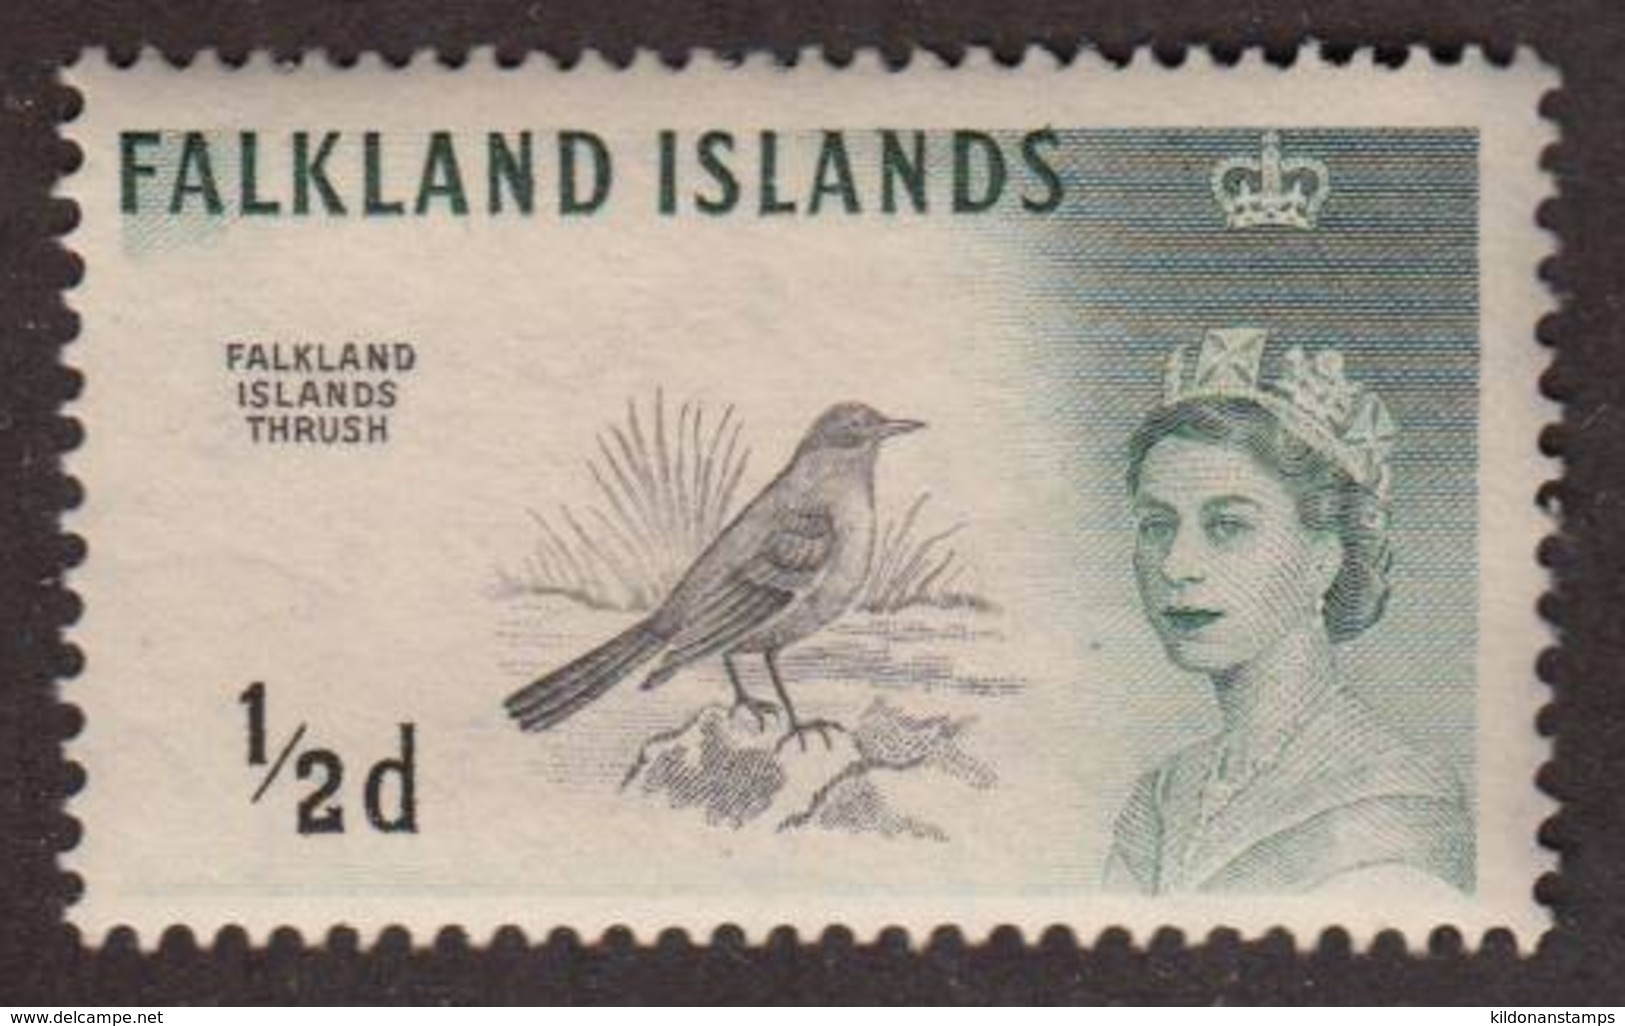 Falkland Islands 1960 Mint No Hinge, Sc# 128, SG 193 - Falklandinseln